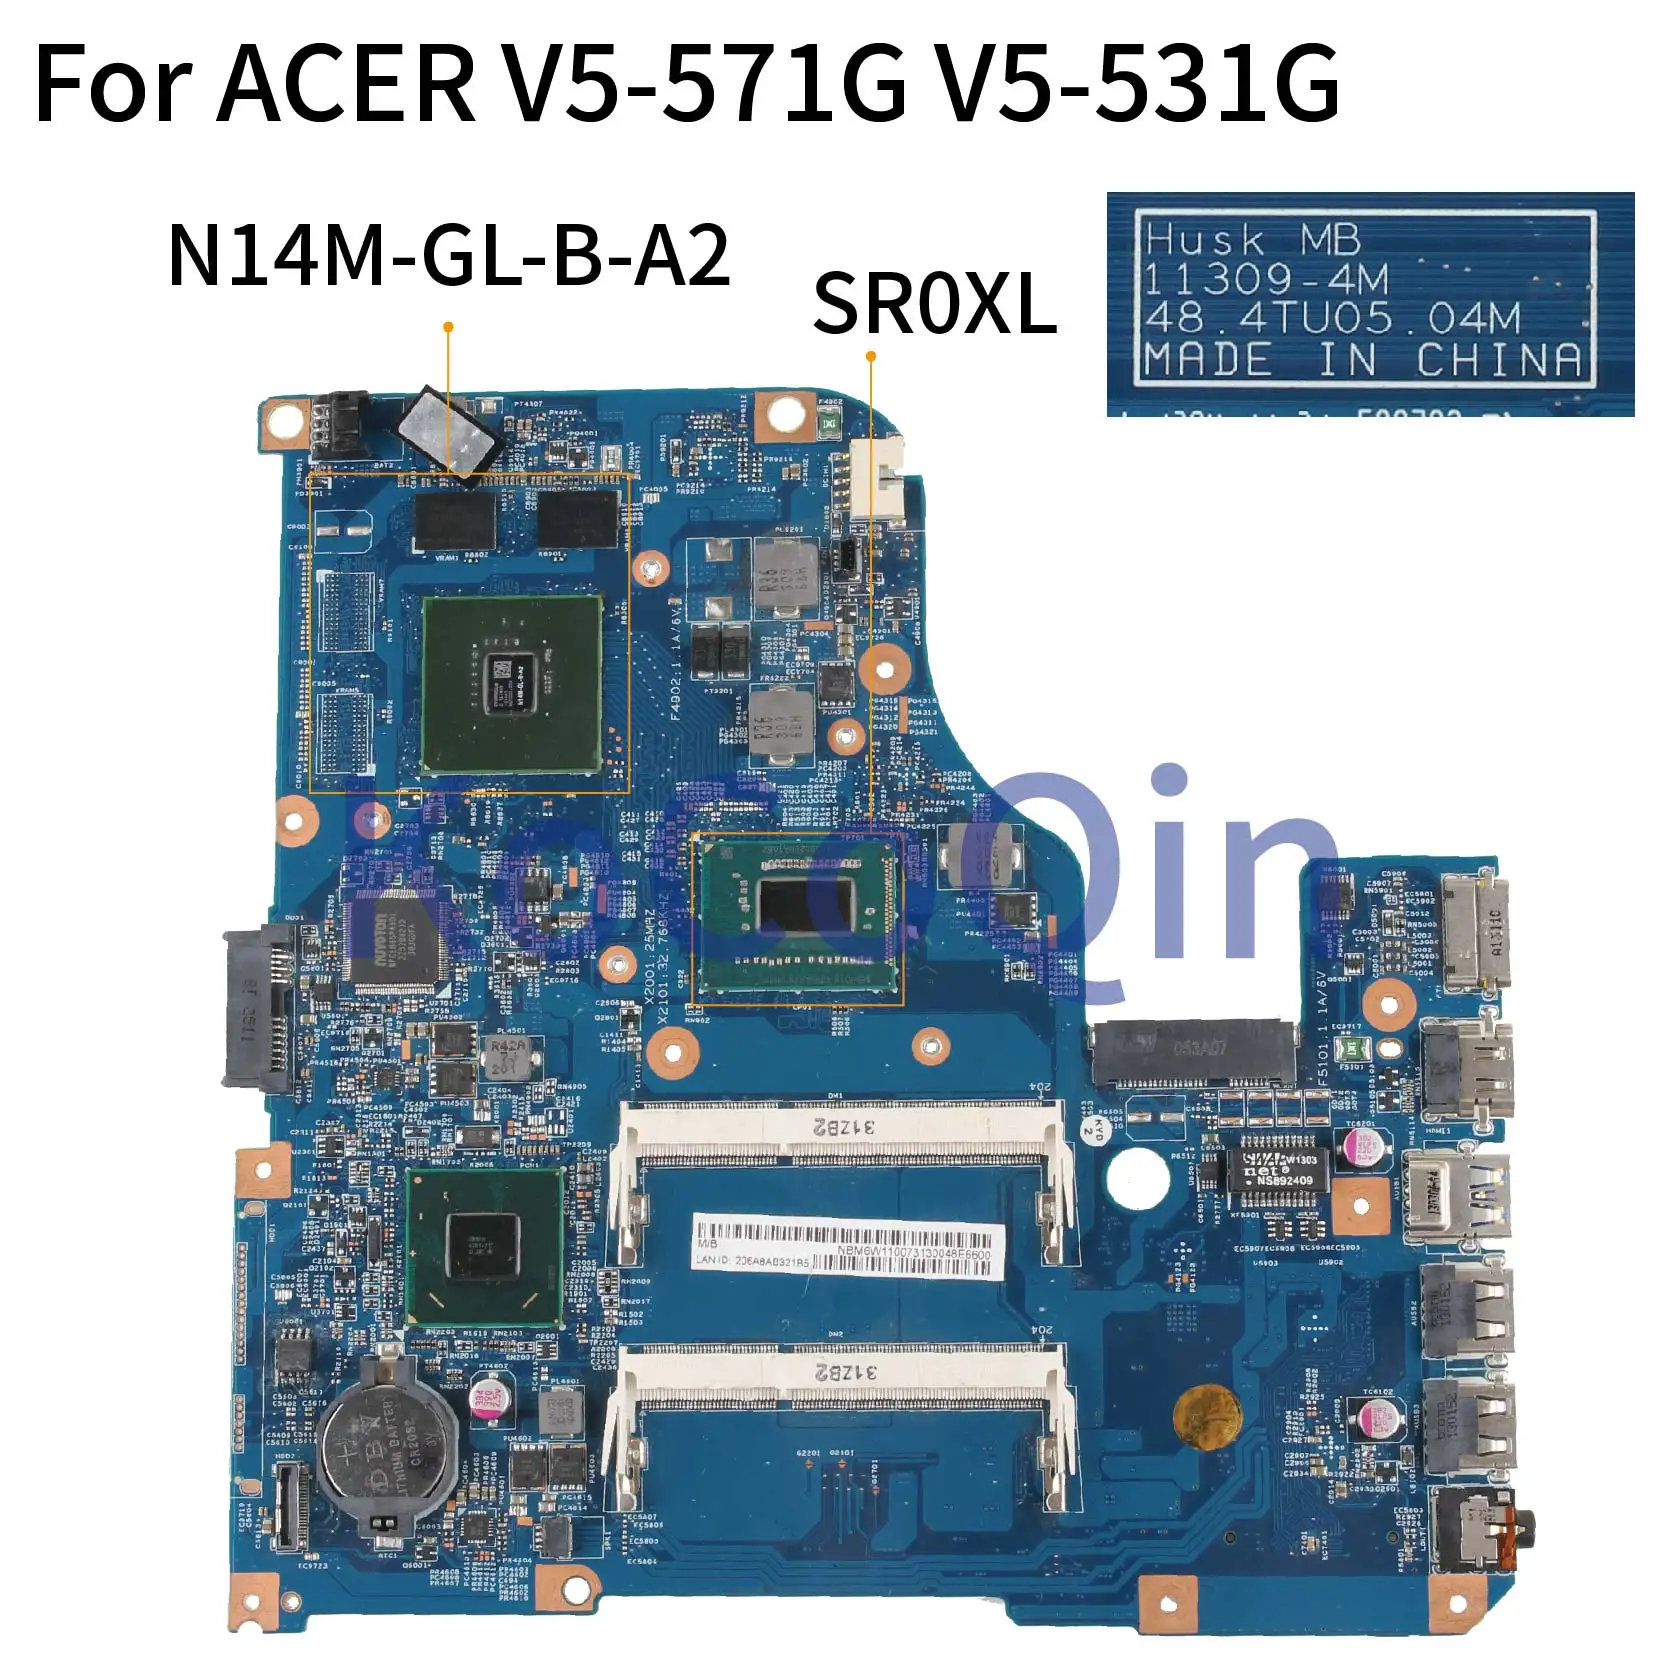 Kocoqin Laptop Motherboard For Acer Aspire V5-571g V5-531g V5-431g Sr0xl  Mainboard 11309-4m 48.4tu05.04m N14m-gl-b-a2 Slj8c 2g - Laptop Motherboard  - AliExpress